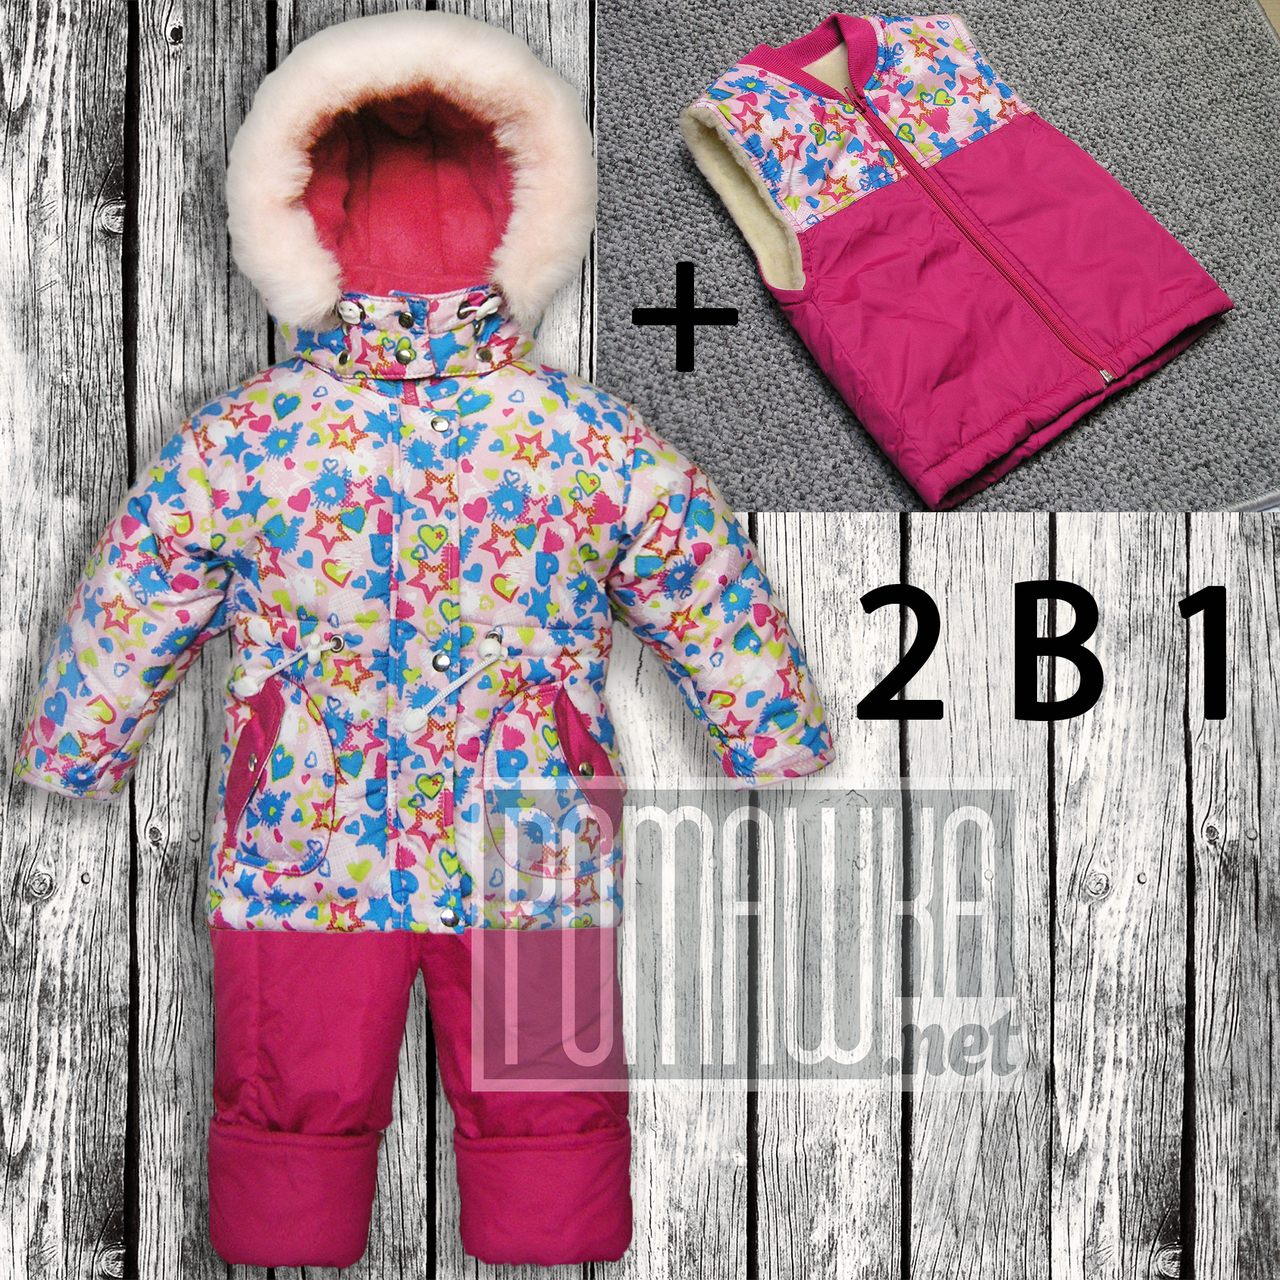 Термокомбінезон р 80 1-1.5 роки куртка-парку штани жилет зимовий дитячий роздільний на овчині для дівчинки